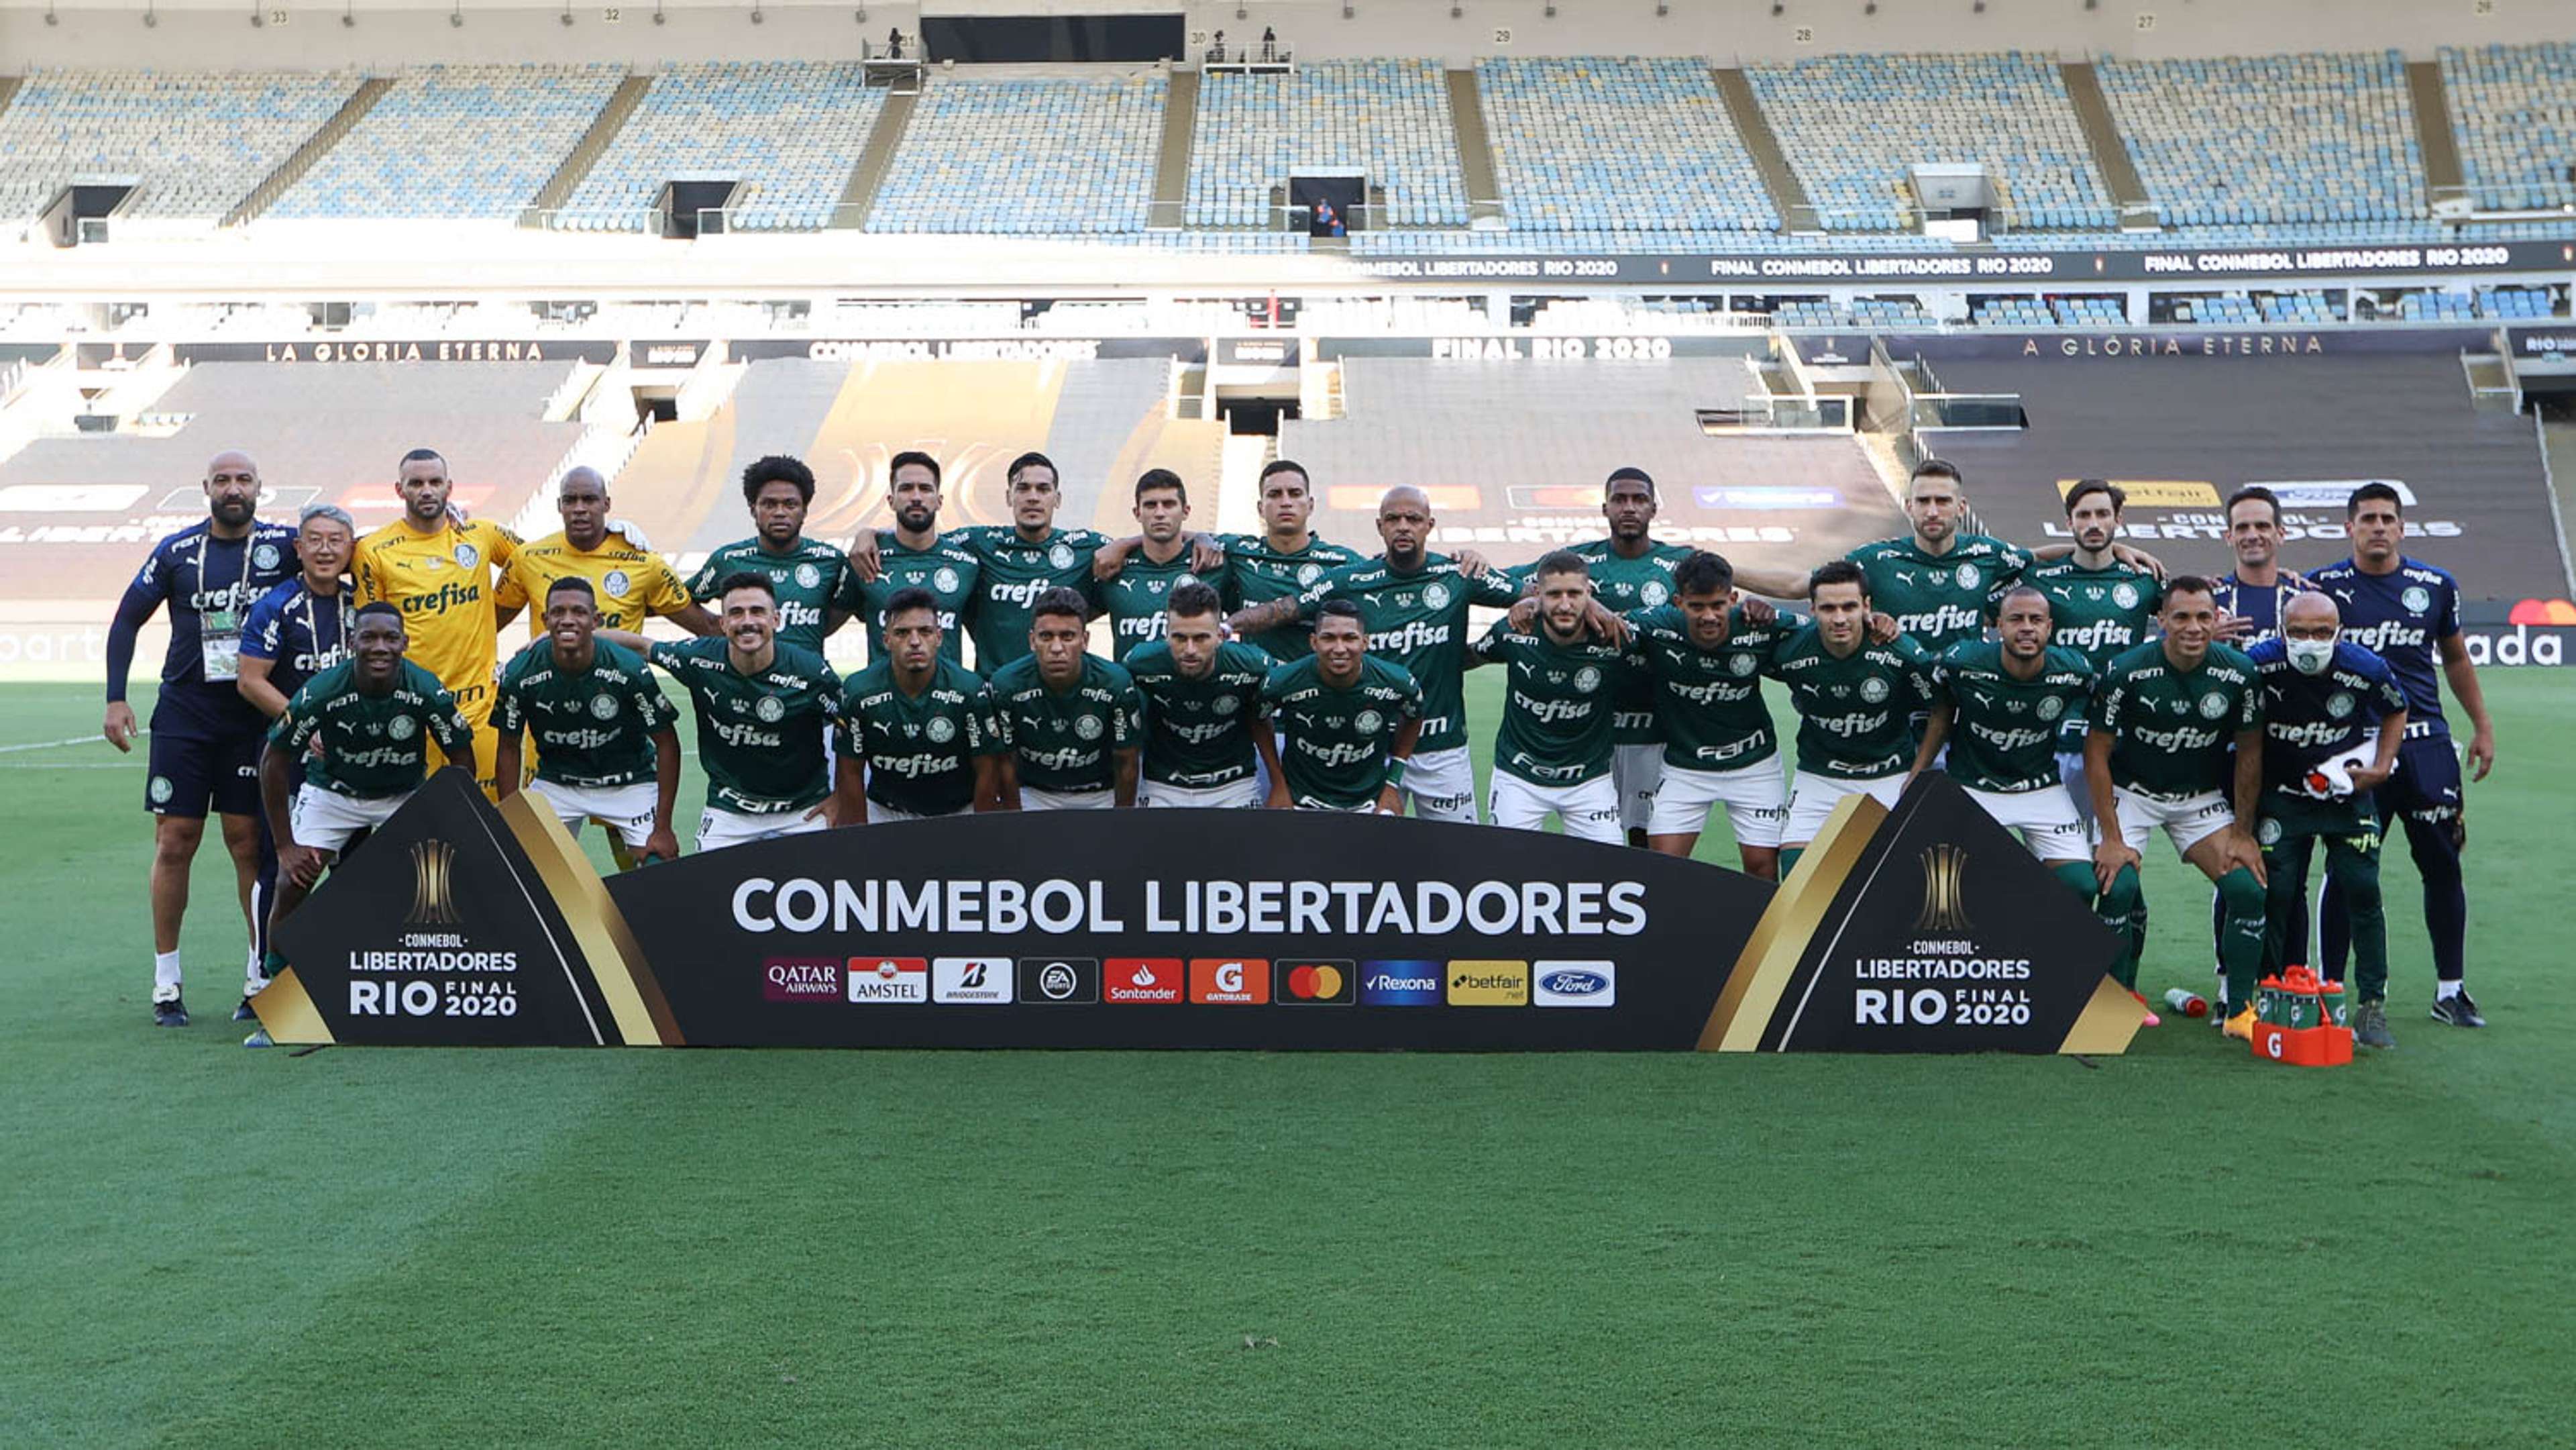 Elenco do Palmeiras campeão da Libertadores 2020 - Palmeiras 1 x 0 Santos 30 01 2020